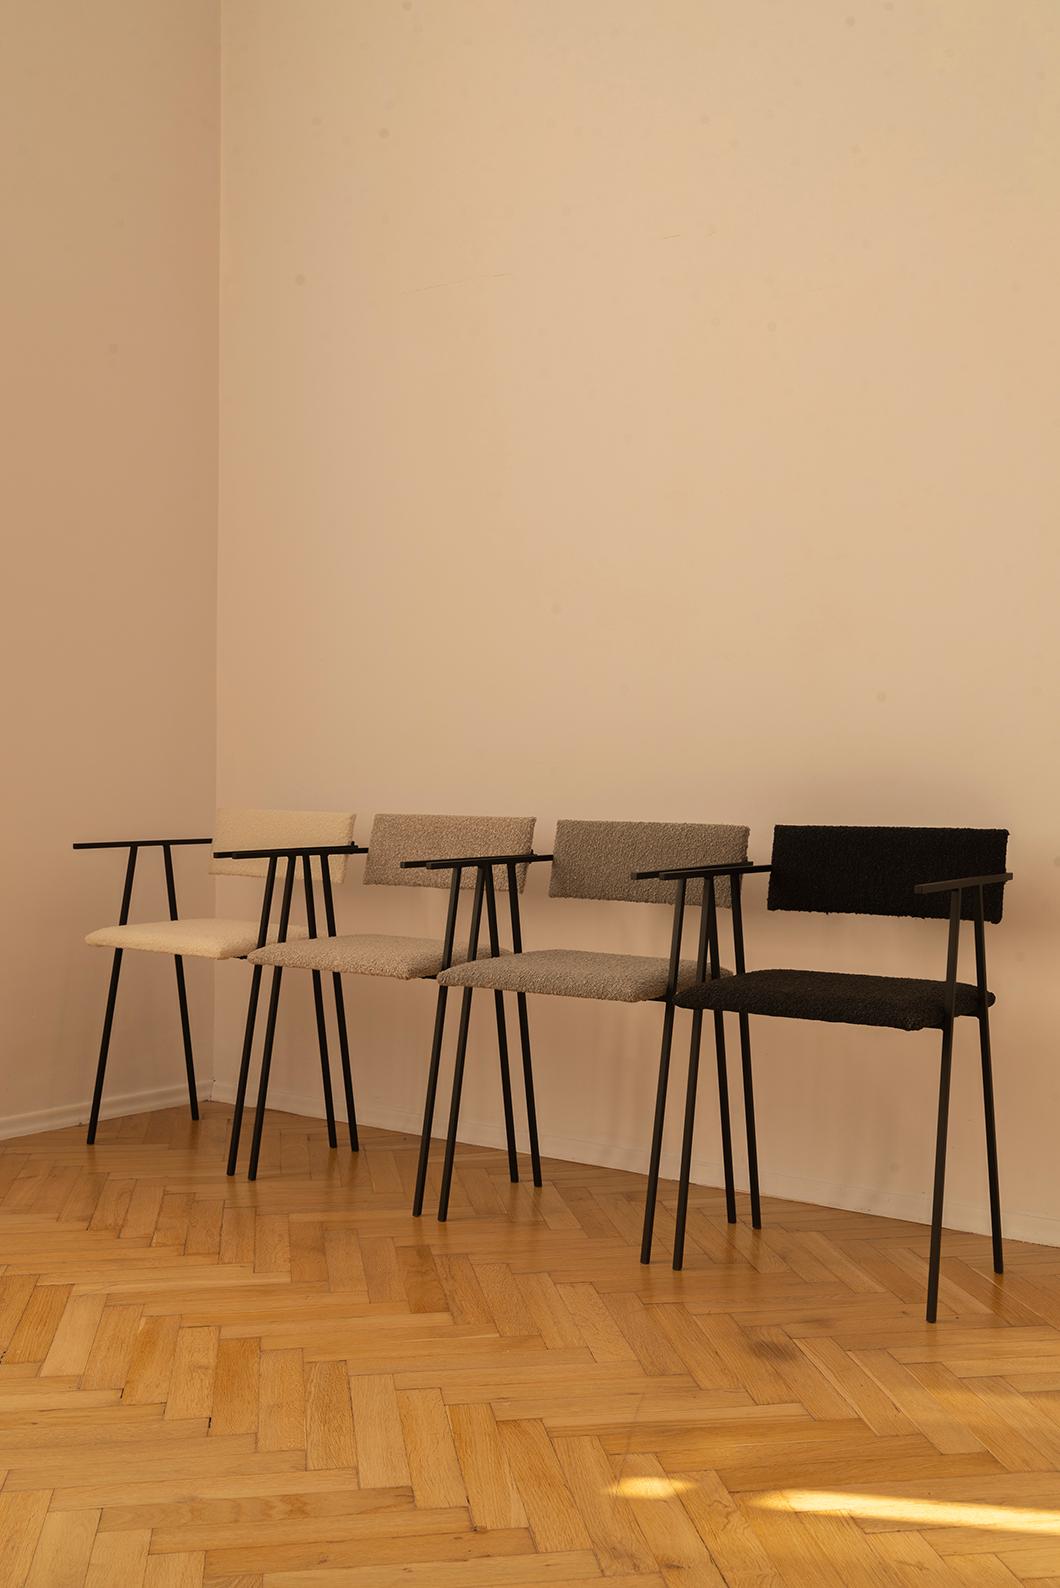 4er-Set object 058 Stühle von NG Design
Abmessungen: T 45 x B 42 x H 75 cm
MATERIALIEN: Pulverbeschichteter Stahl, Boucle-Polsterung.

Auch verfügbar: Alle Objekte sind auf Anfrage in verschiedenen MATERIALEN und Farben erhältlich.

Object058